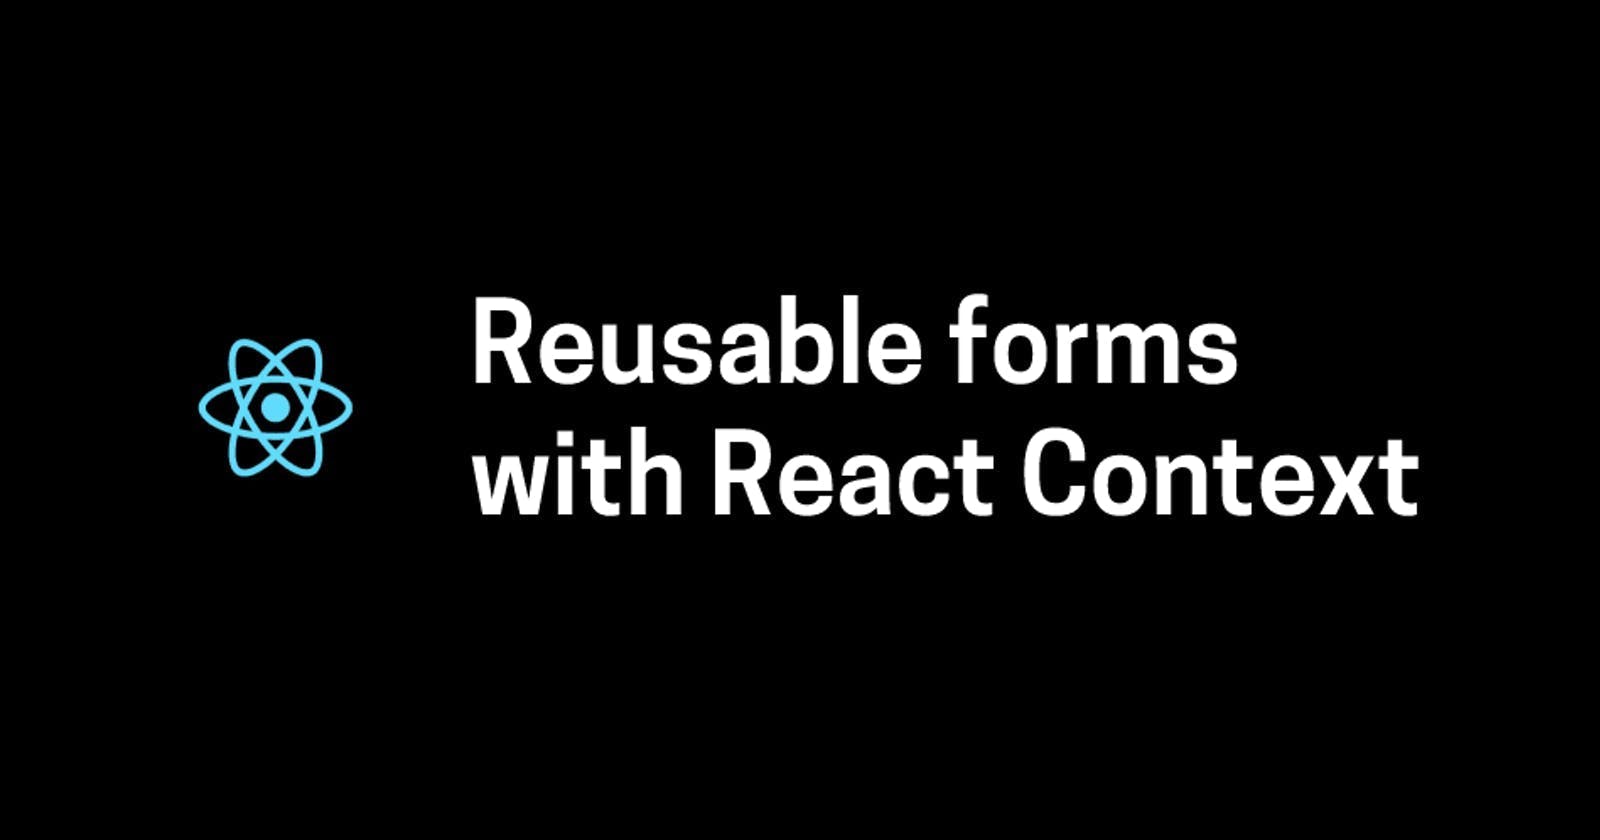 React: How to create a reusable form using React Context